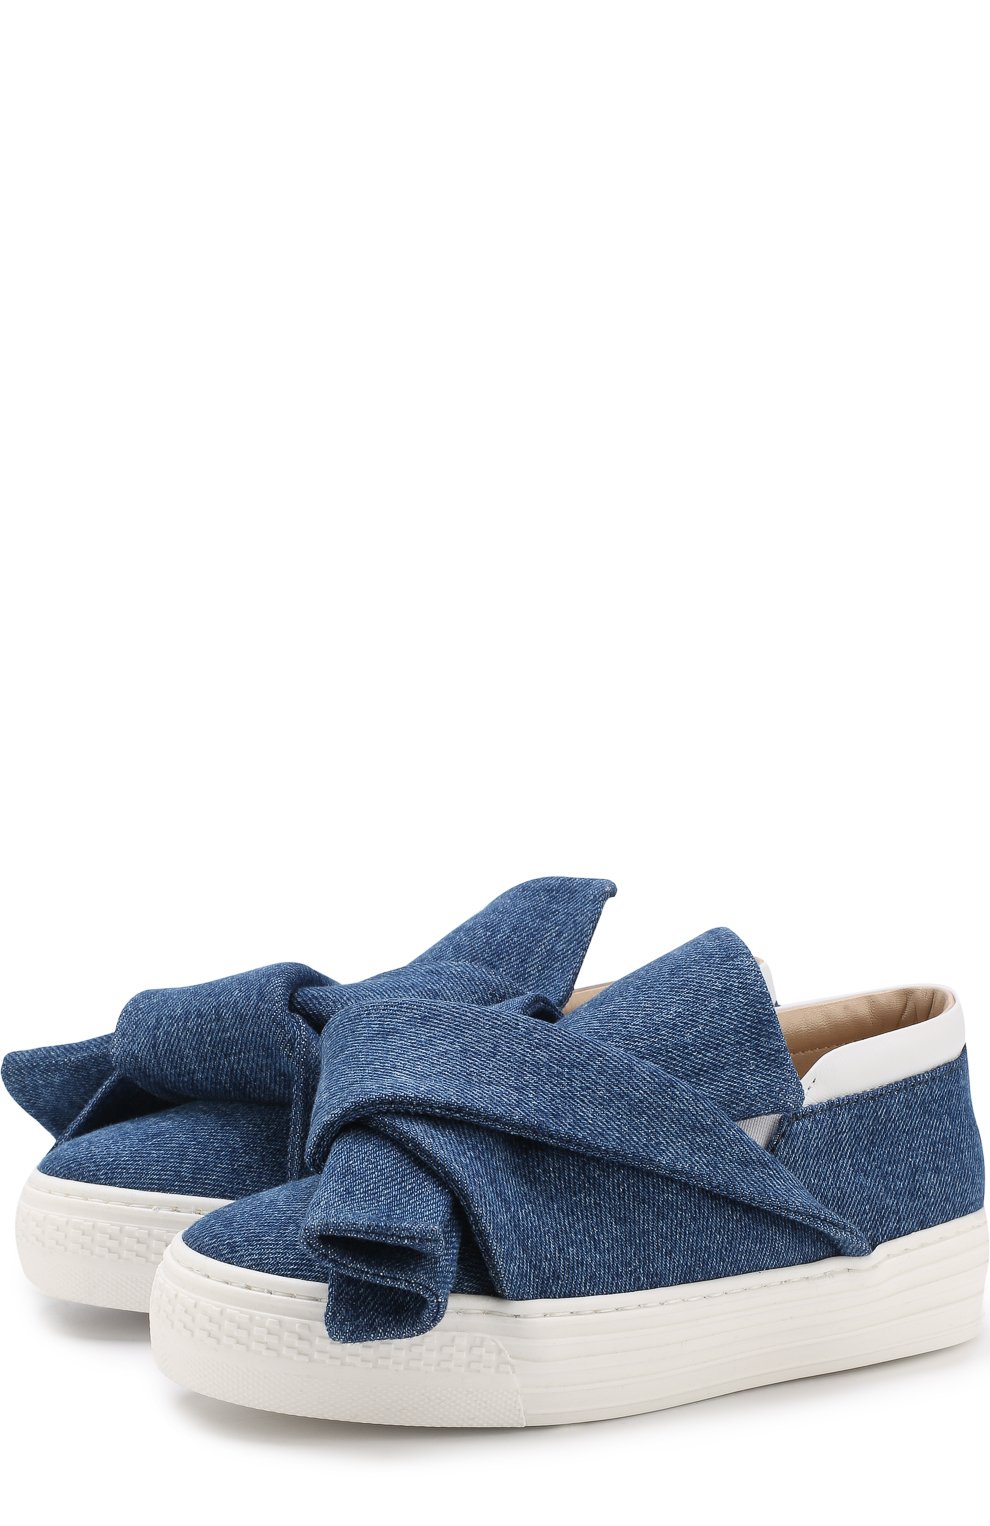 Детские текстильные слипоны с бантами N21 синего цвета, арт. 54634/28-35 | Фото 1 (Материал внешний: Текстиль; Статус проверки: Проверено)